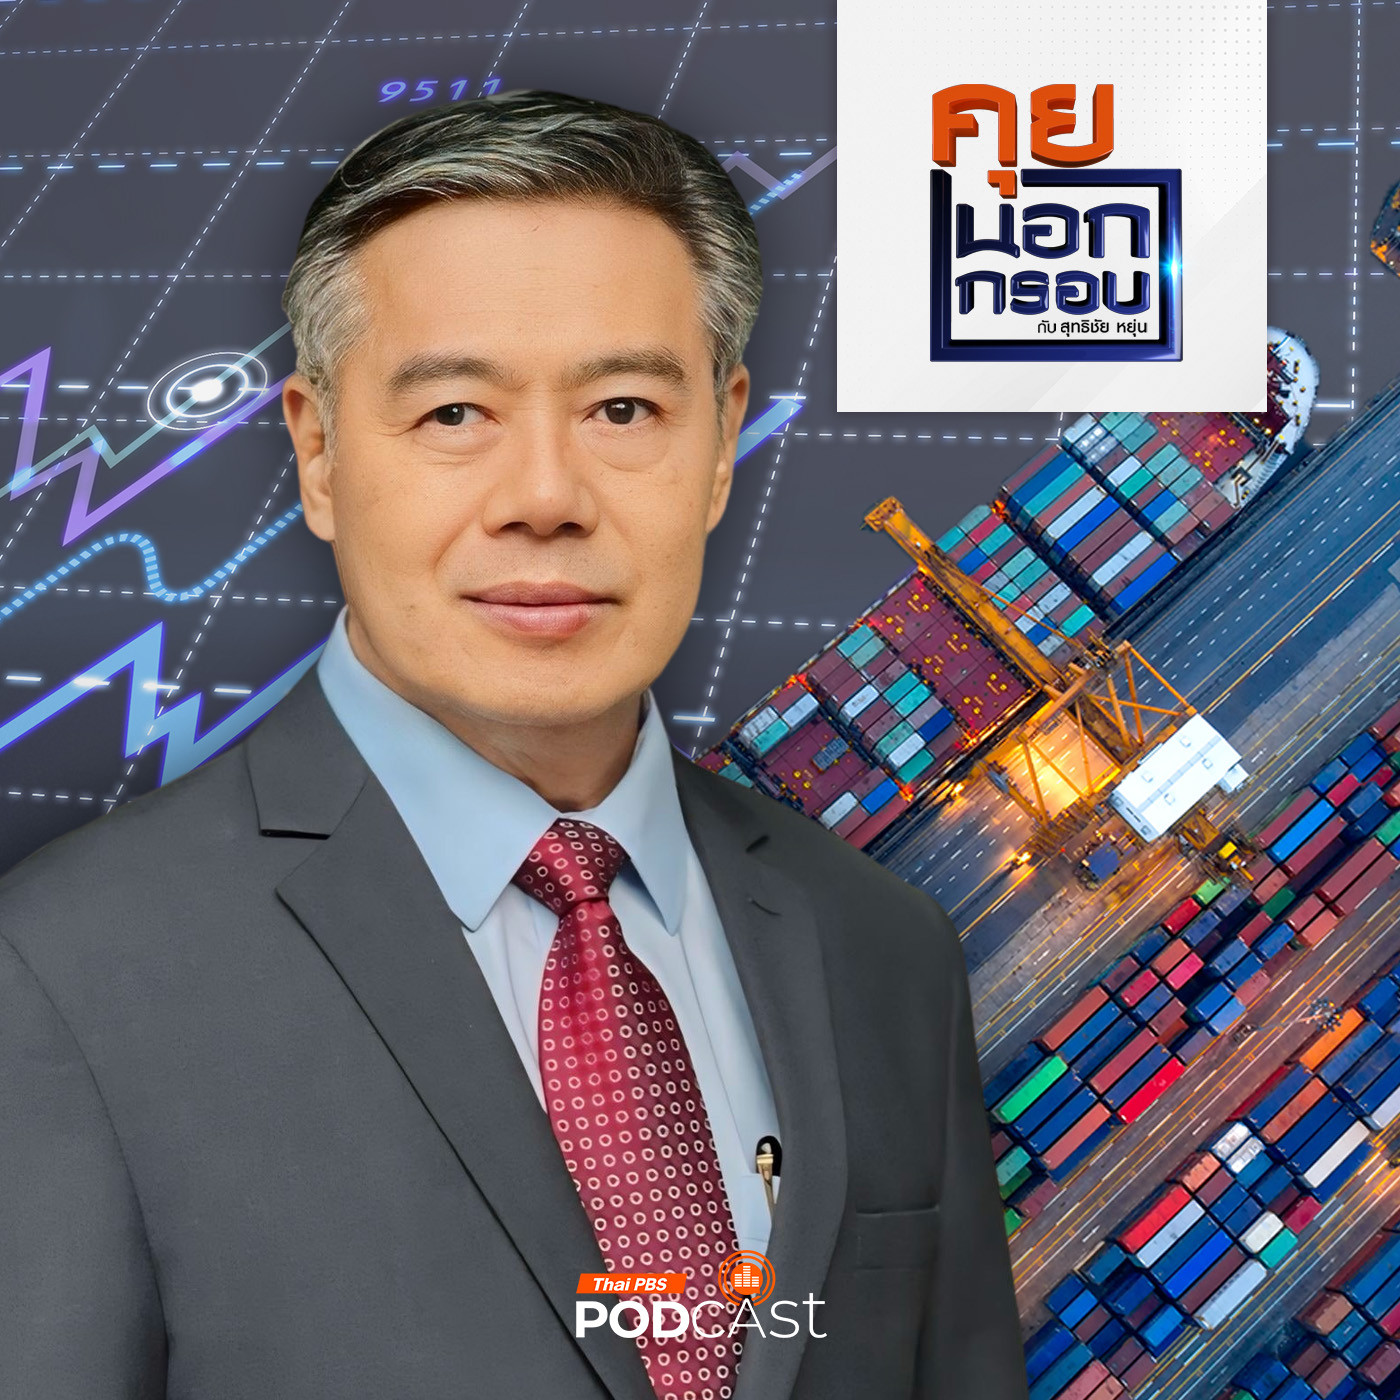 คุยนอกกรอบ EP. 23: โจทย์ท้าทายเศรษฐกิจไทยในยุคนี้ แนวทางการฝ่ามรสุมกับการ�